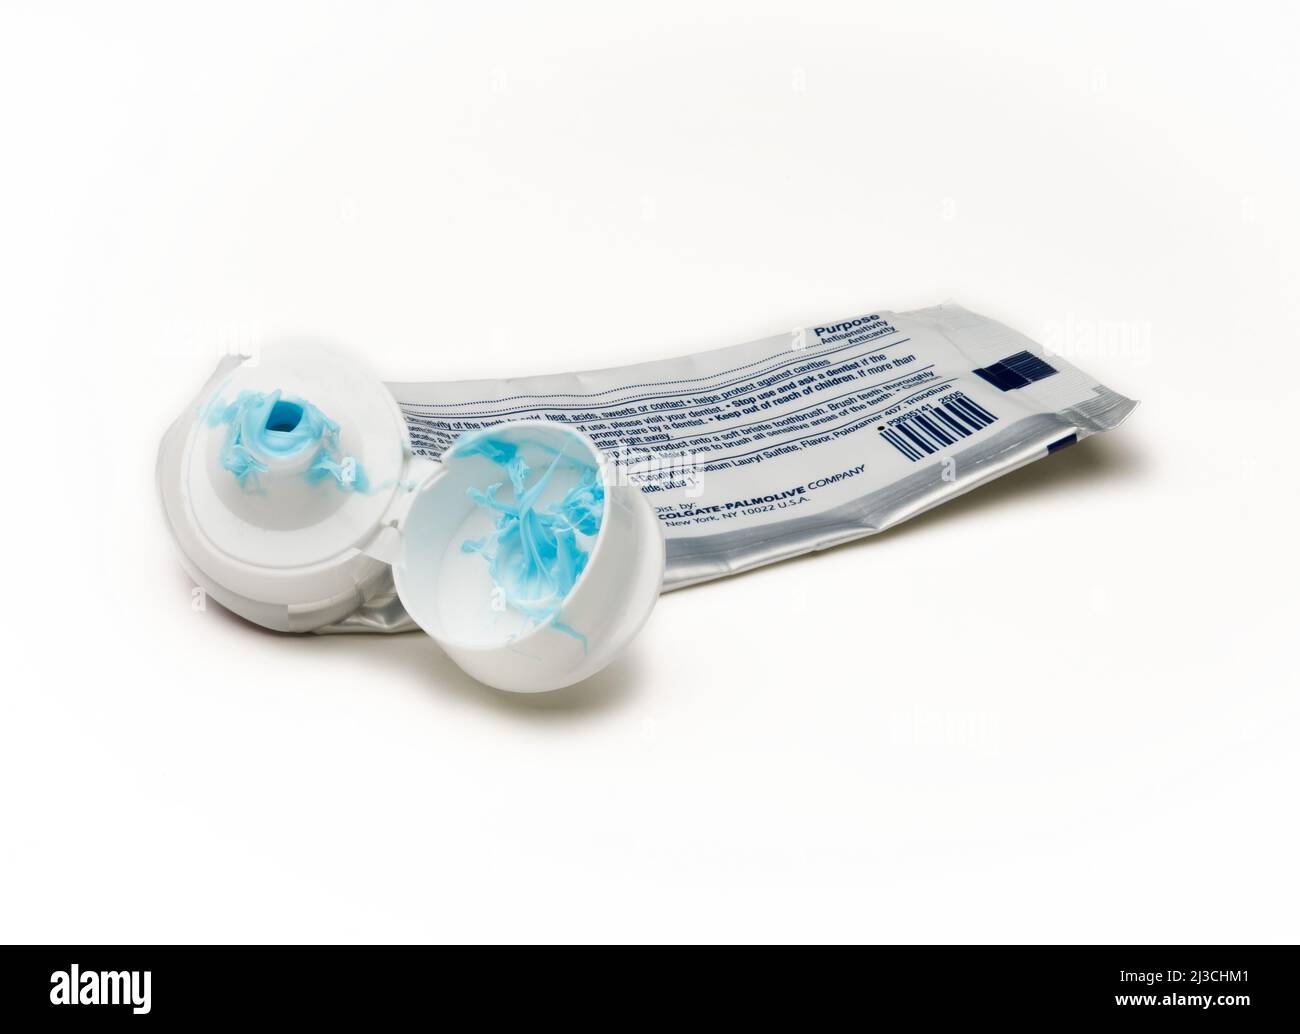 Un tubo usado de pasta dental con el habitual lío y obstrucción en la punta Foto de stock